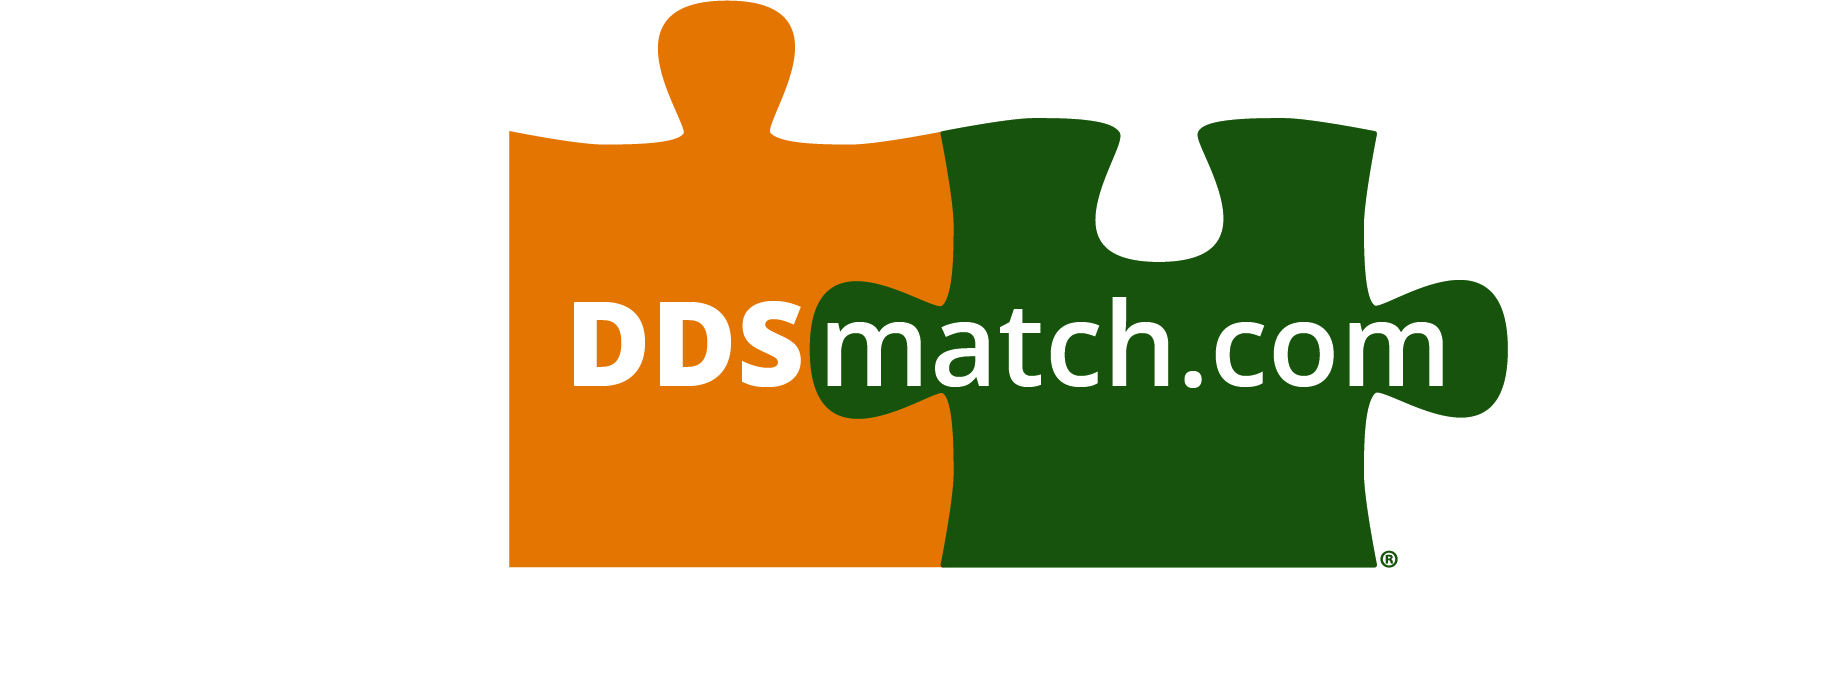 ddsmatch.com - Thad Miller Logo